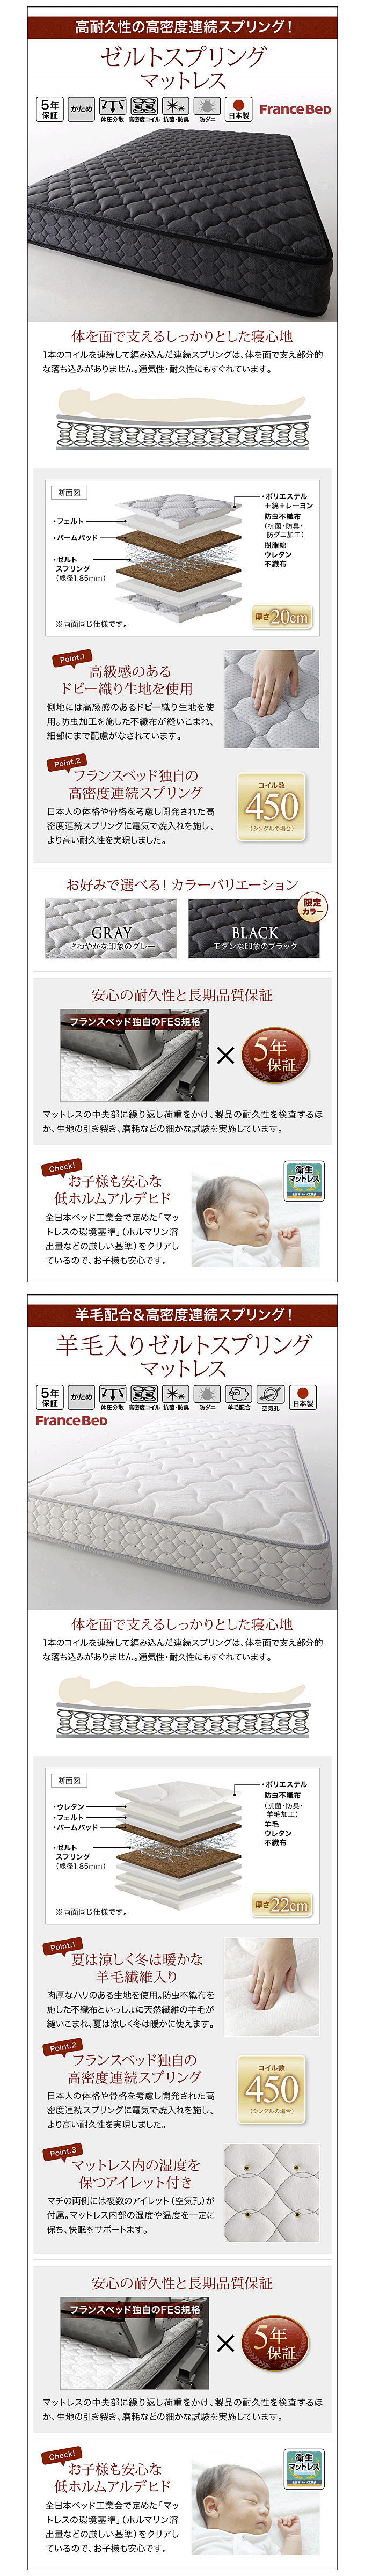 モダンデザイン・高級レザー・デザイナーズベッド Fortuna